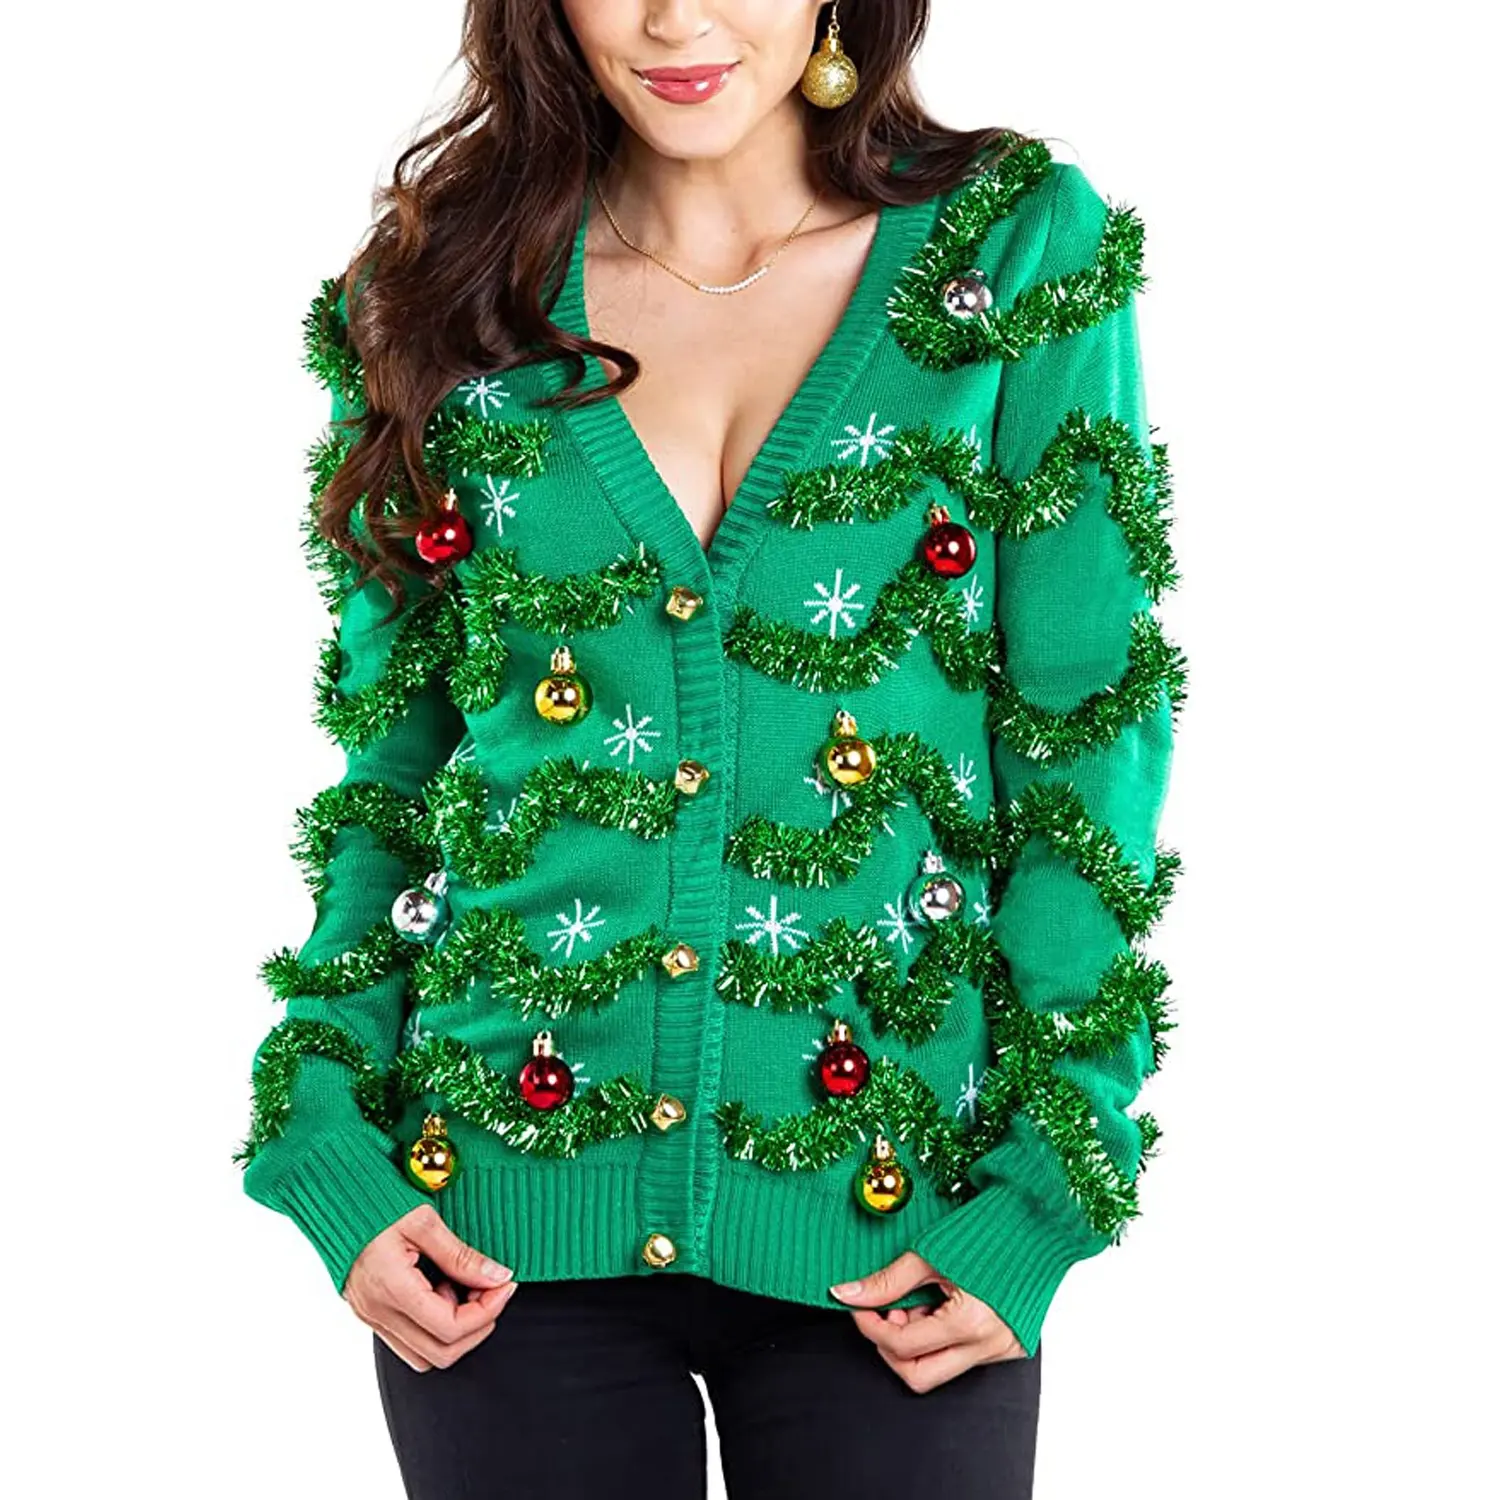 醜いクリスマスセーター粘着性のある女性の醜いクリスマスセーターカーディガン派手な花輪ととんでもない装飾品